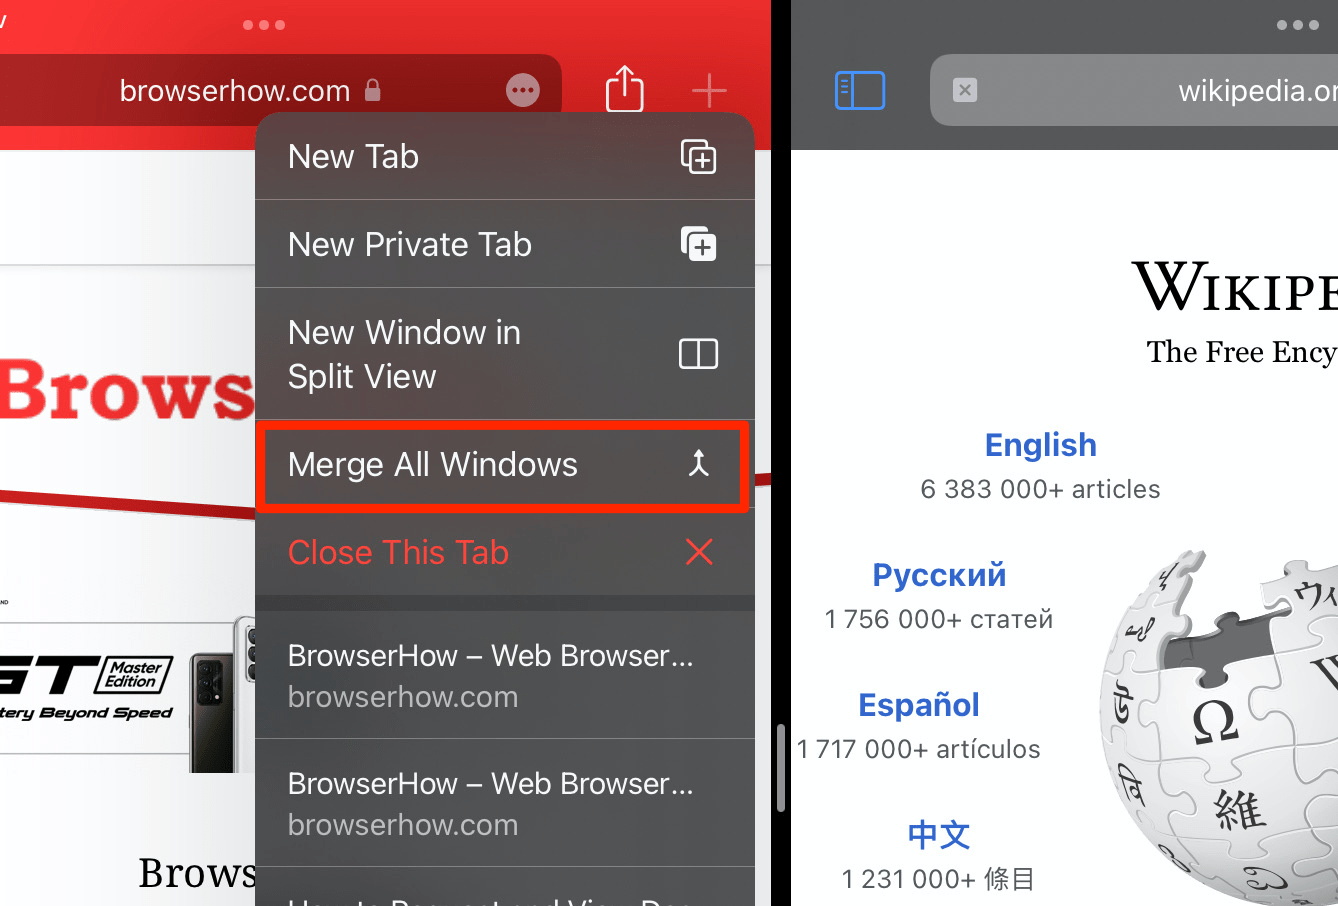 Merge All Windows option in Safari iPad